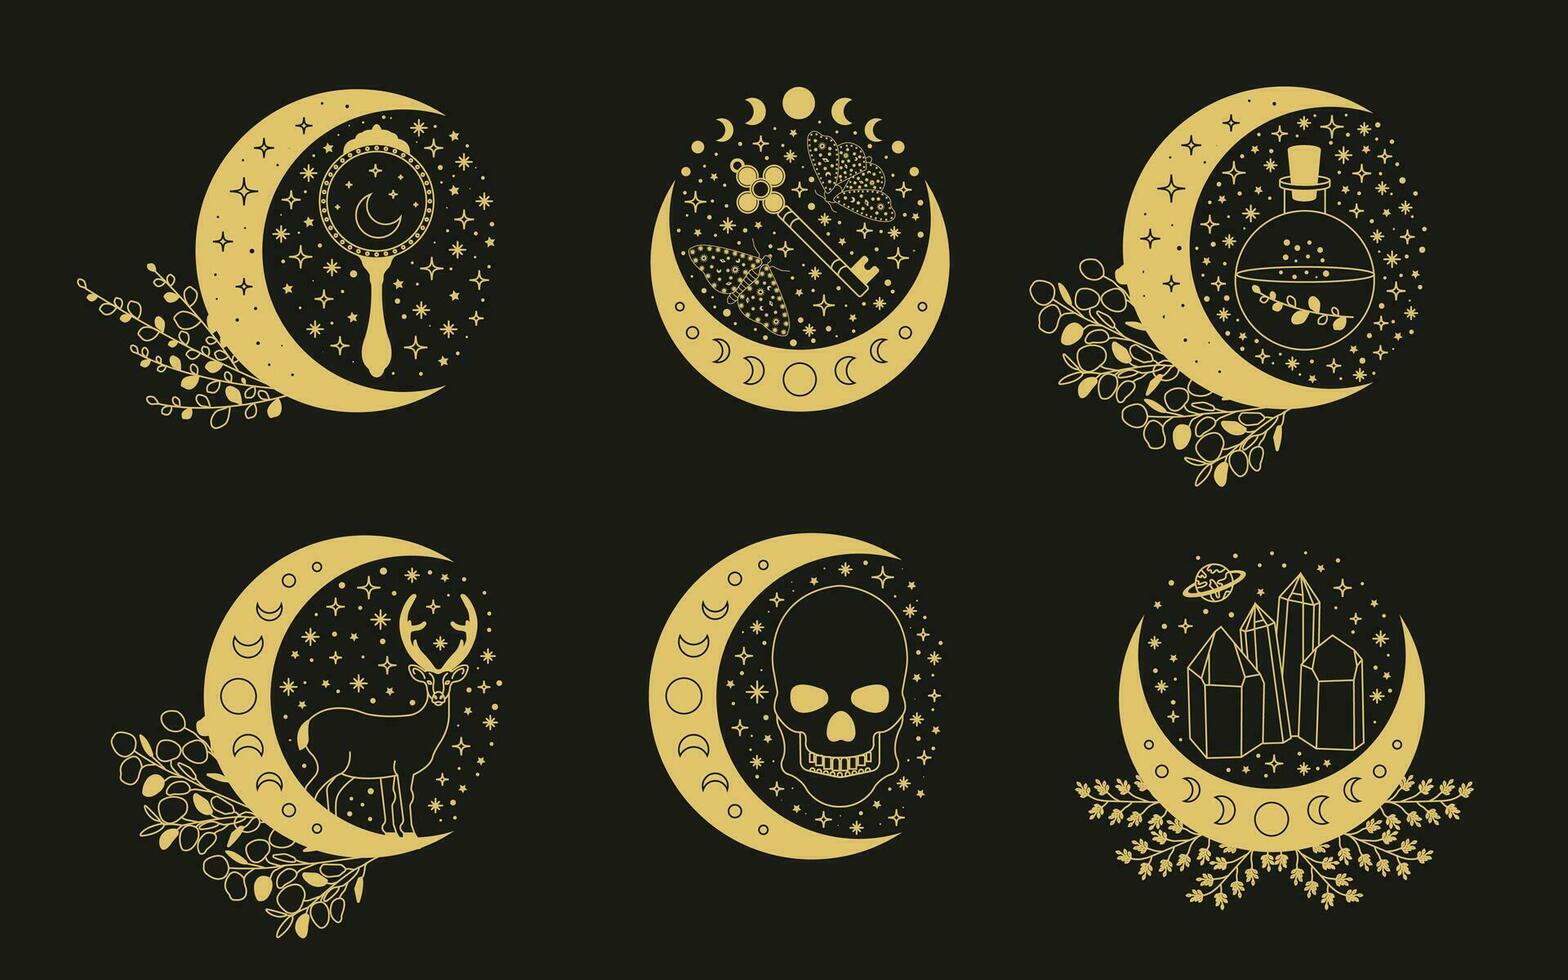 céleste mystique lune collectes. la magie et ésotérique vecteur illustrations.